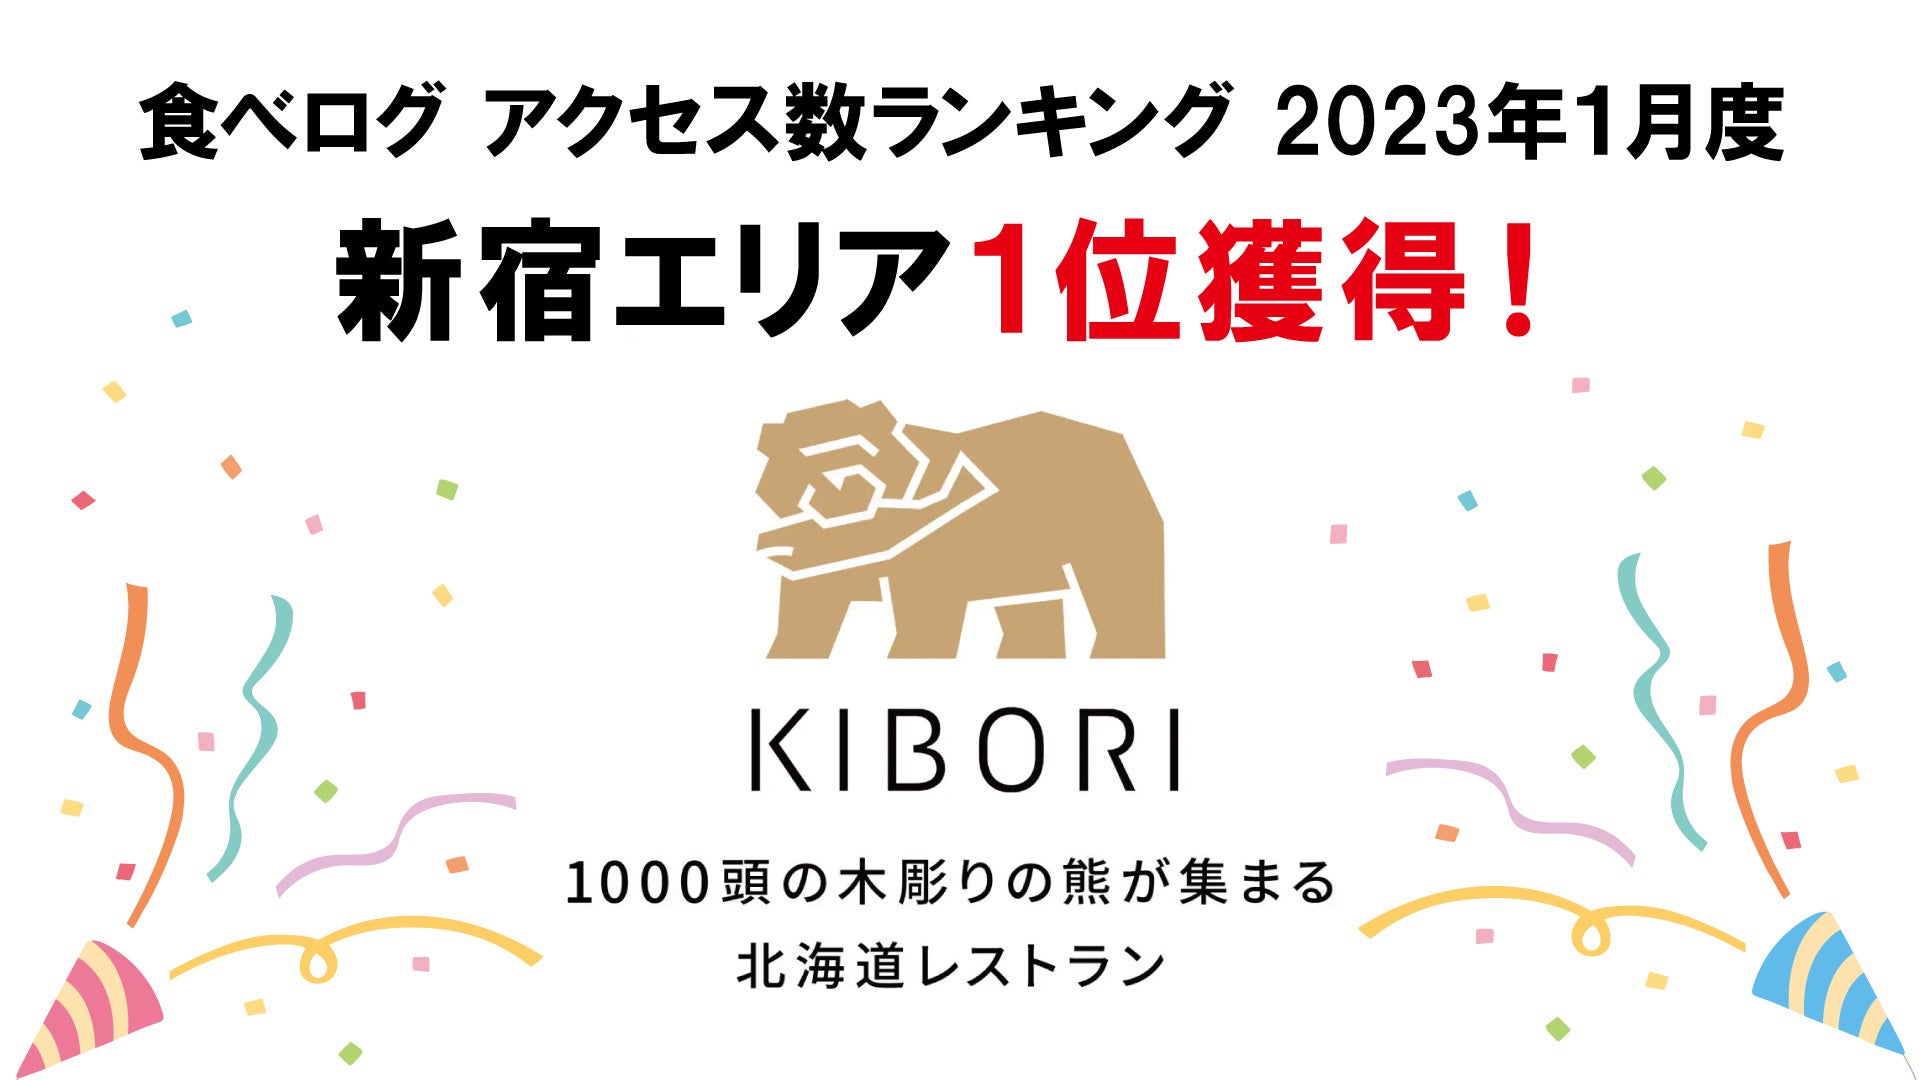 【国内トップクラスの激戦区】1000頭の「木彫りの熊」が集まる北海道レストラン「KIBORI」が、食べログアクセス数ランキング新宿エリアにて1位を獲得！